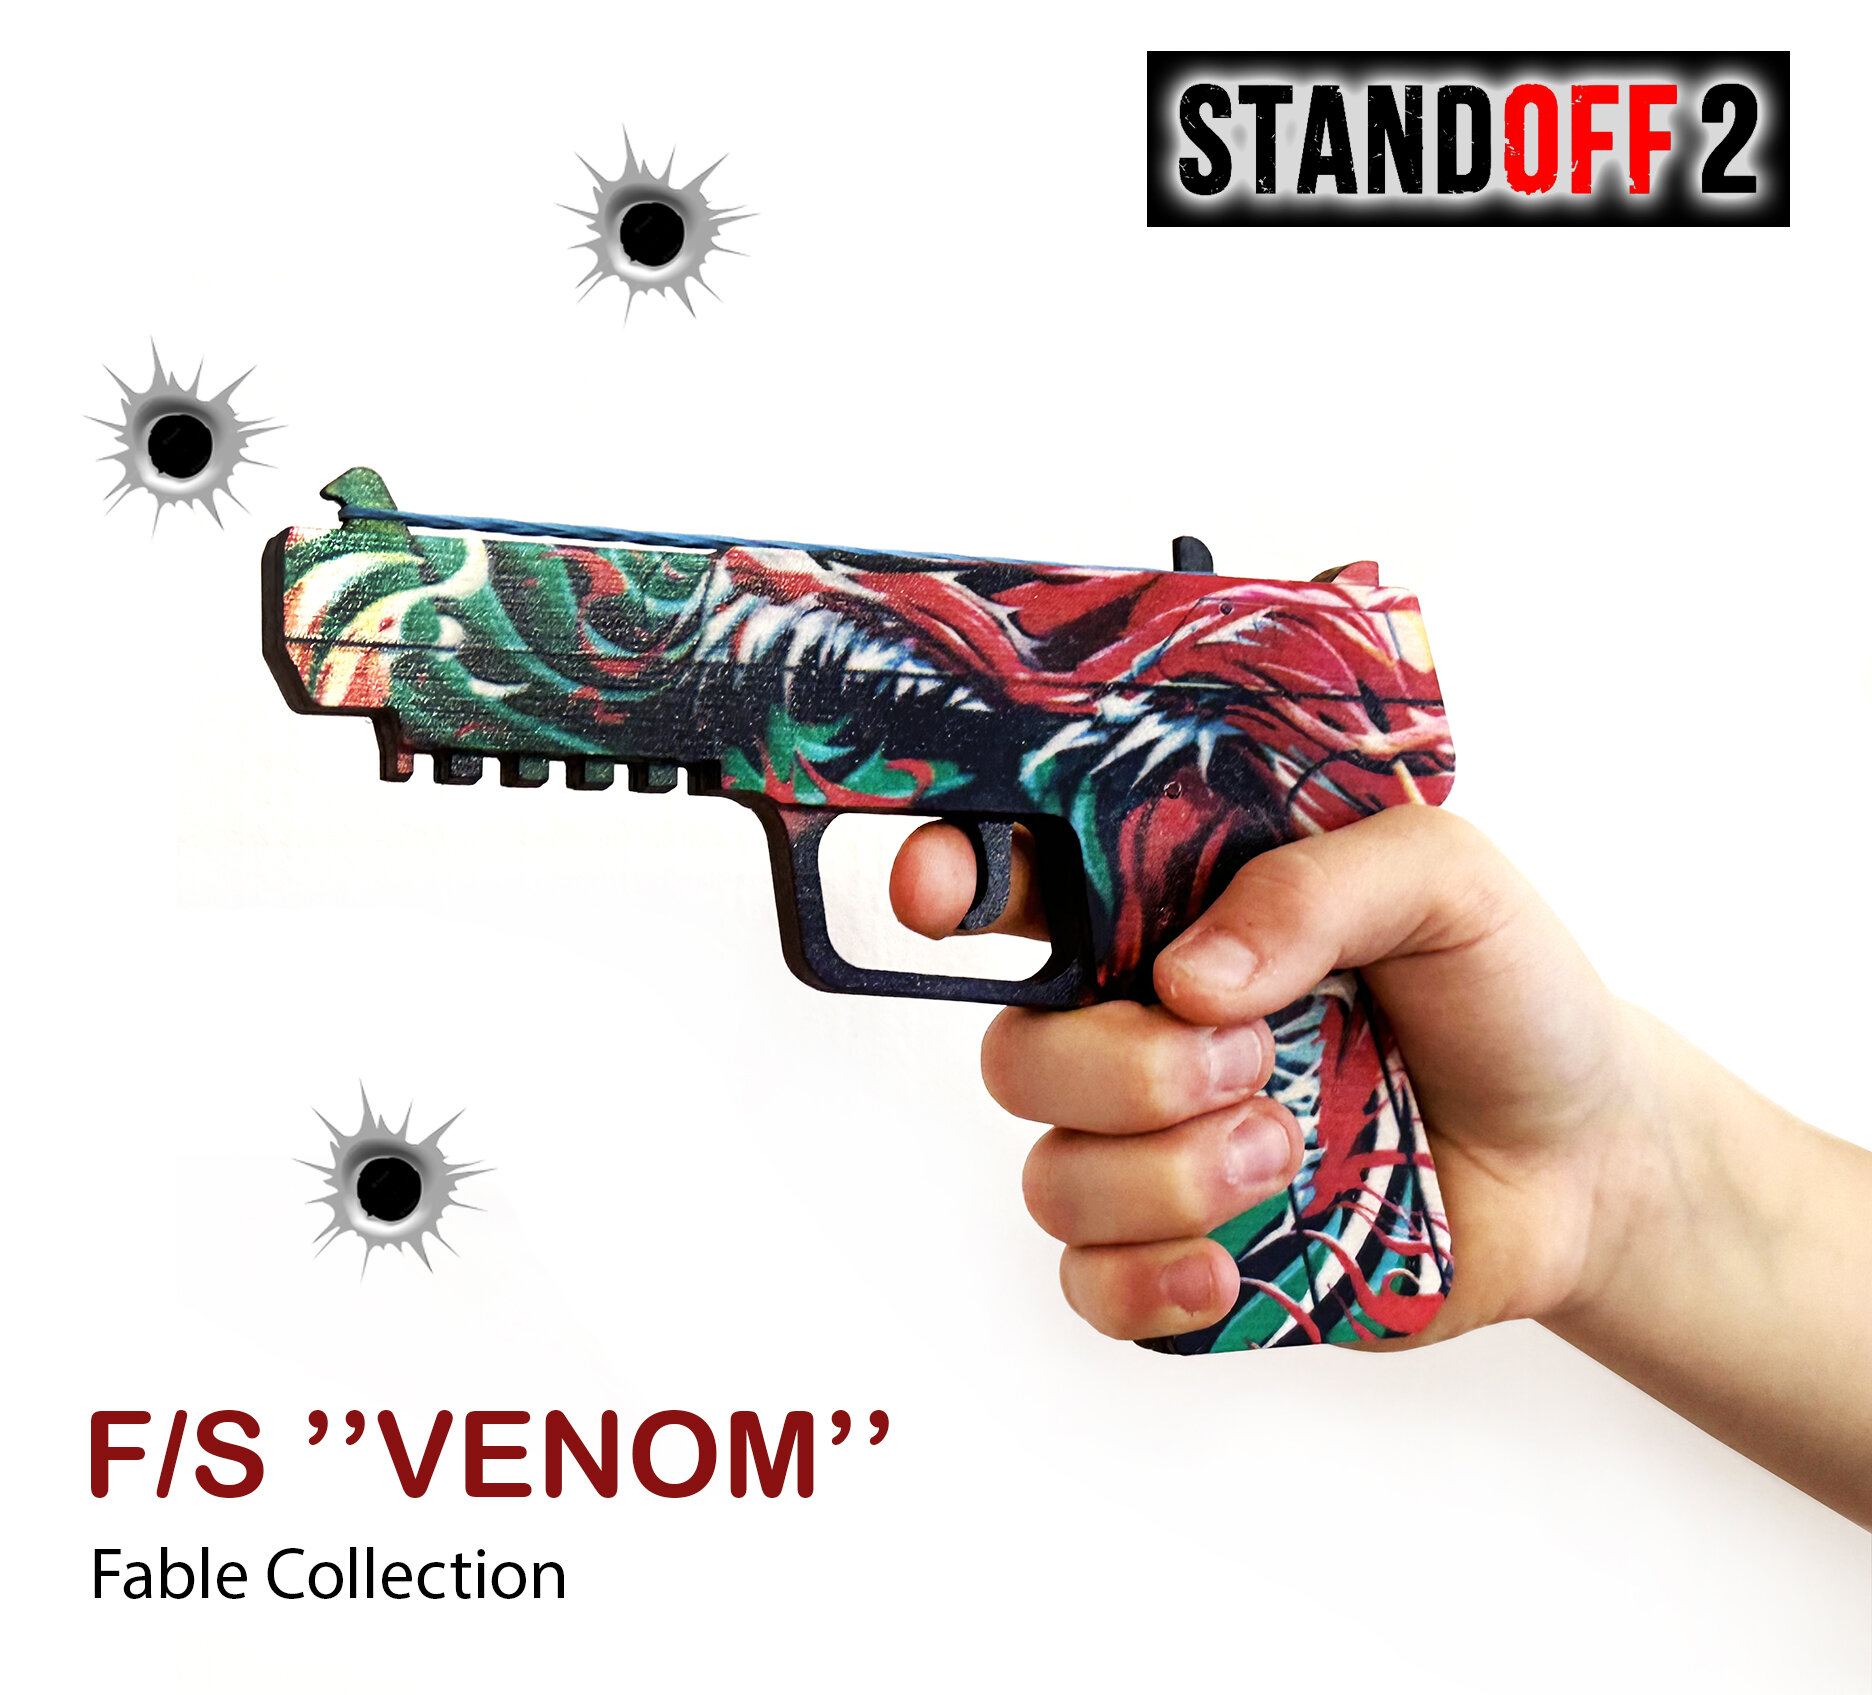 Деревянный пистолет Standoff 2 Five Seven Venom / Игрушечный пистолет Стандофф 2 резинкострел